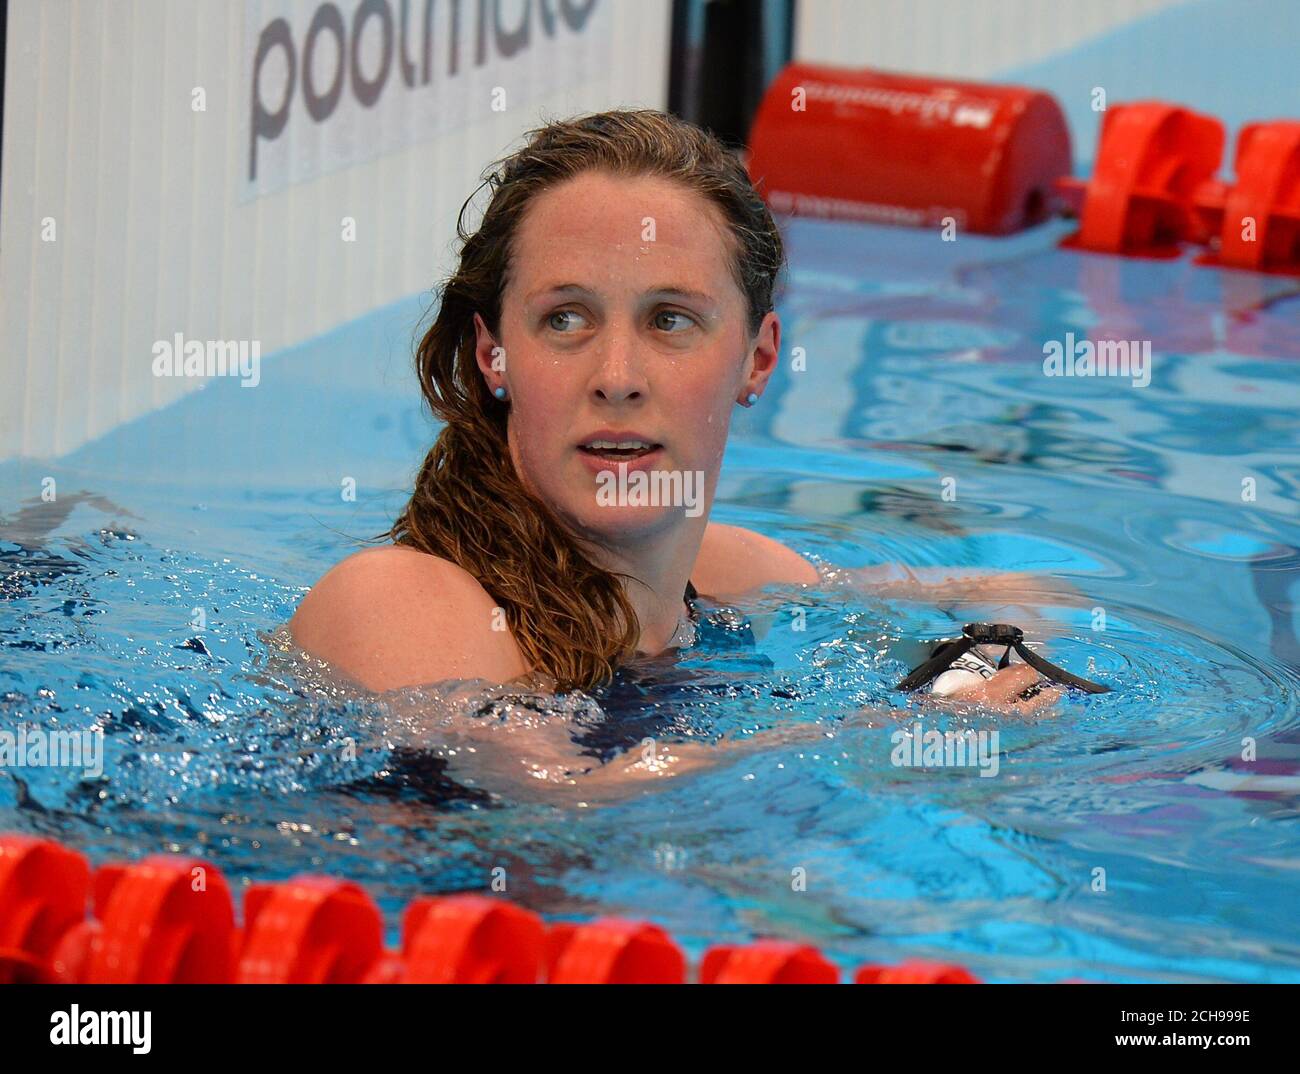 Hannah Miley, en Grande-Bretagne, après avoir terminé sa demi-finale féminine Medley de 200 m pendant le dixième jour des championnats d'athlétisme européens au London Aquatics Centre, à Stratford. Banque D'Images